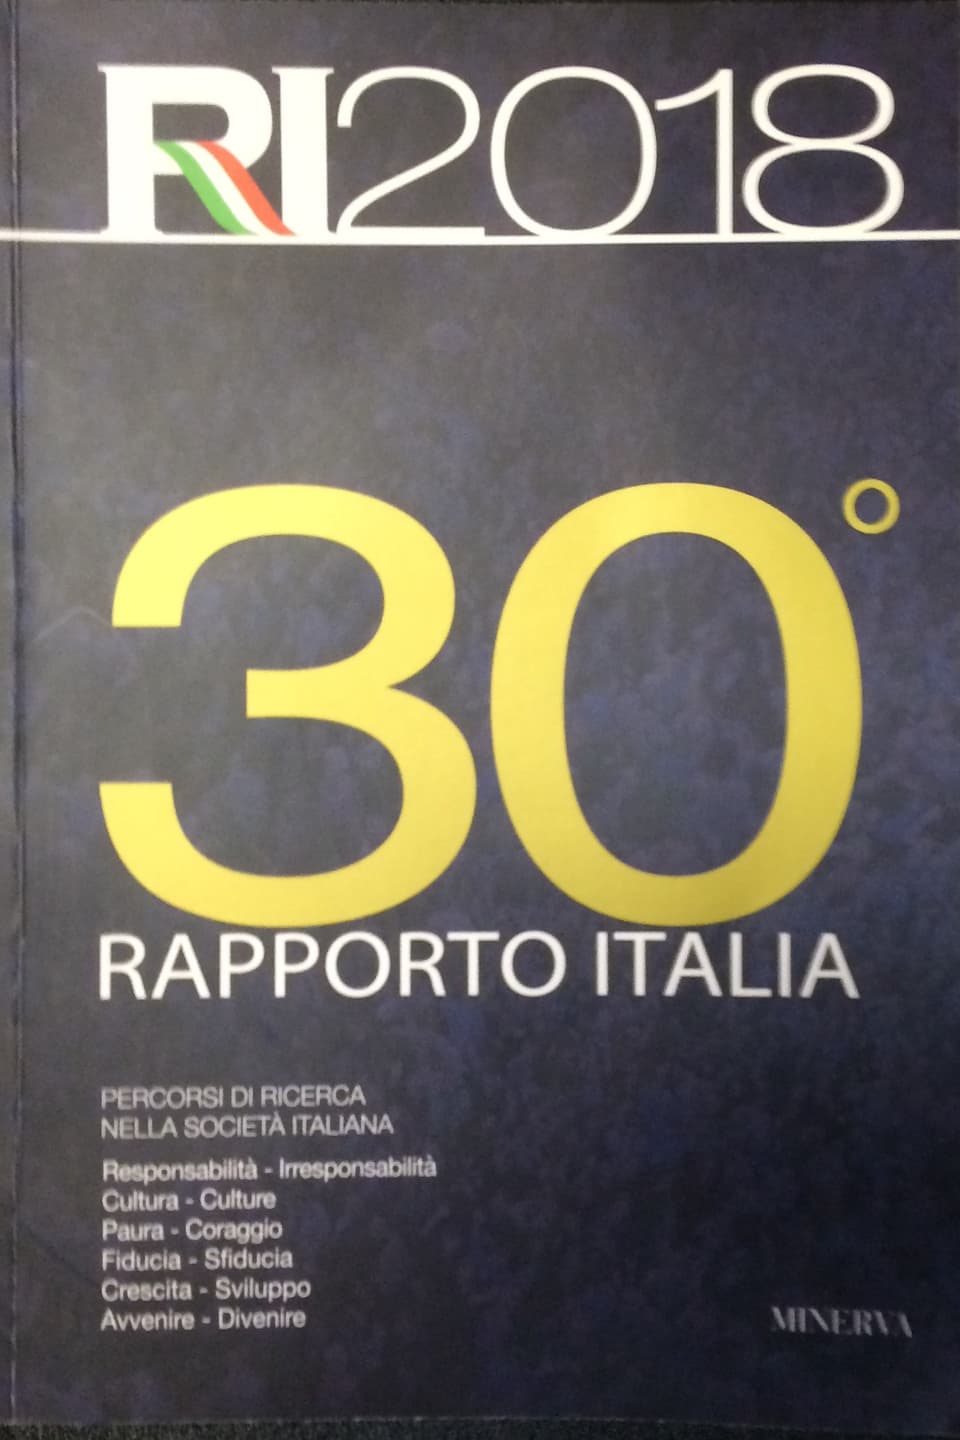 Erscheint seit 30 Jahren alljährlich und spiegelt das Befinden der Italiener und ihrem Land: der «Rapporto Italia»